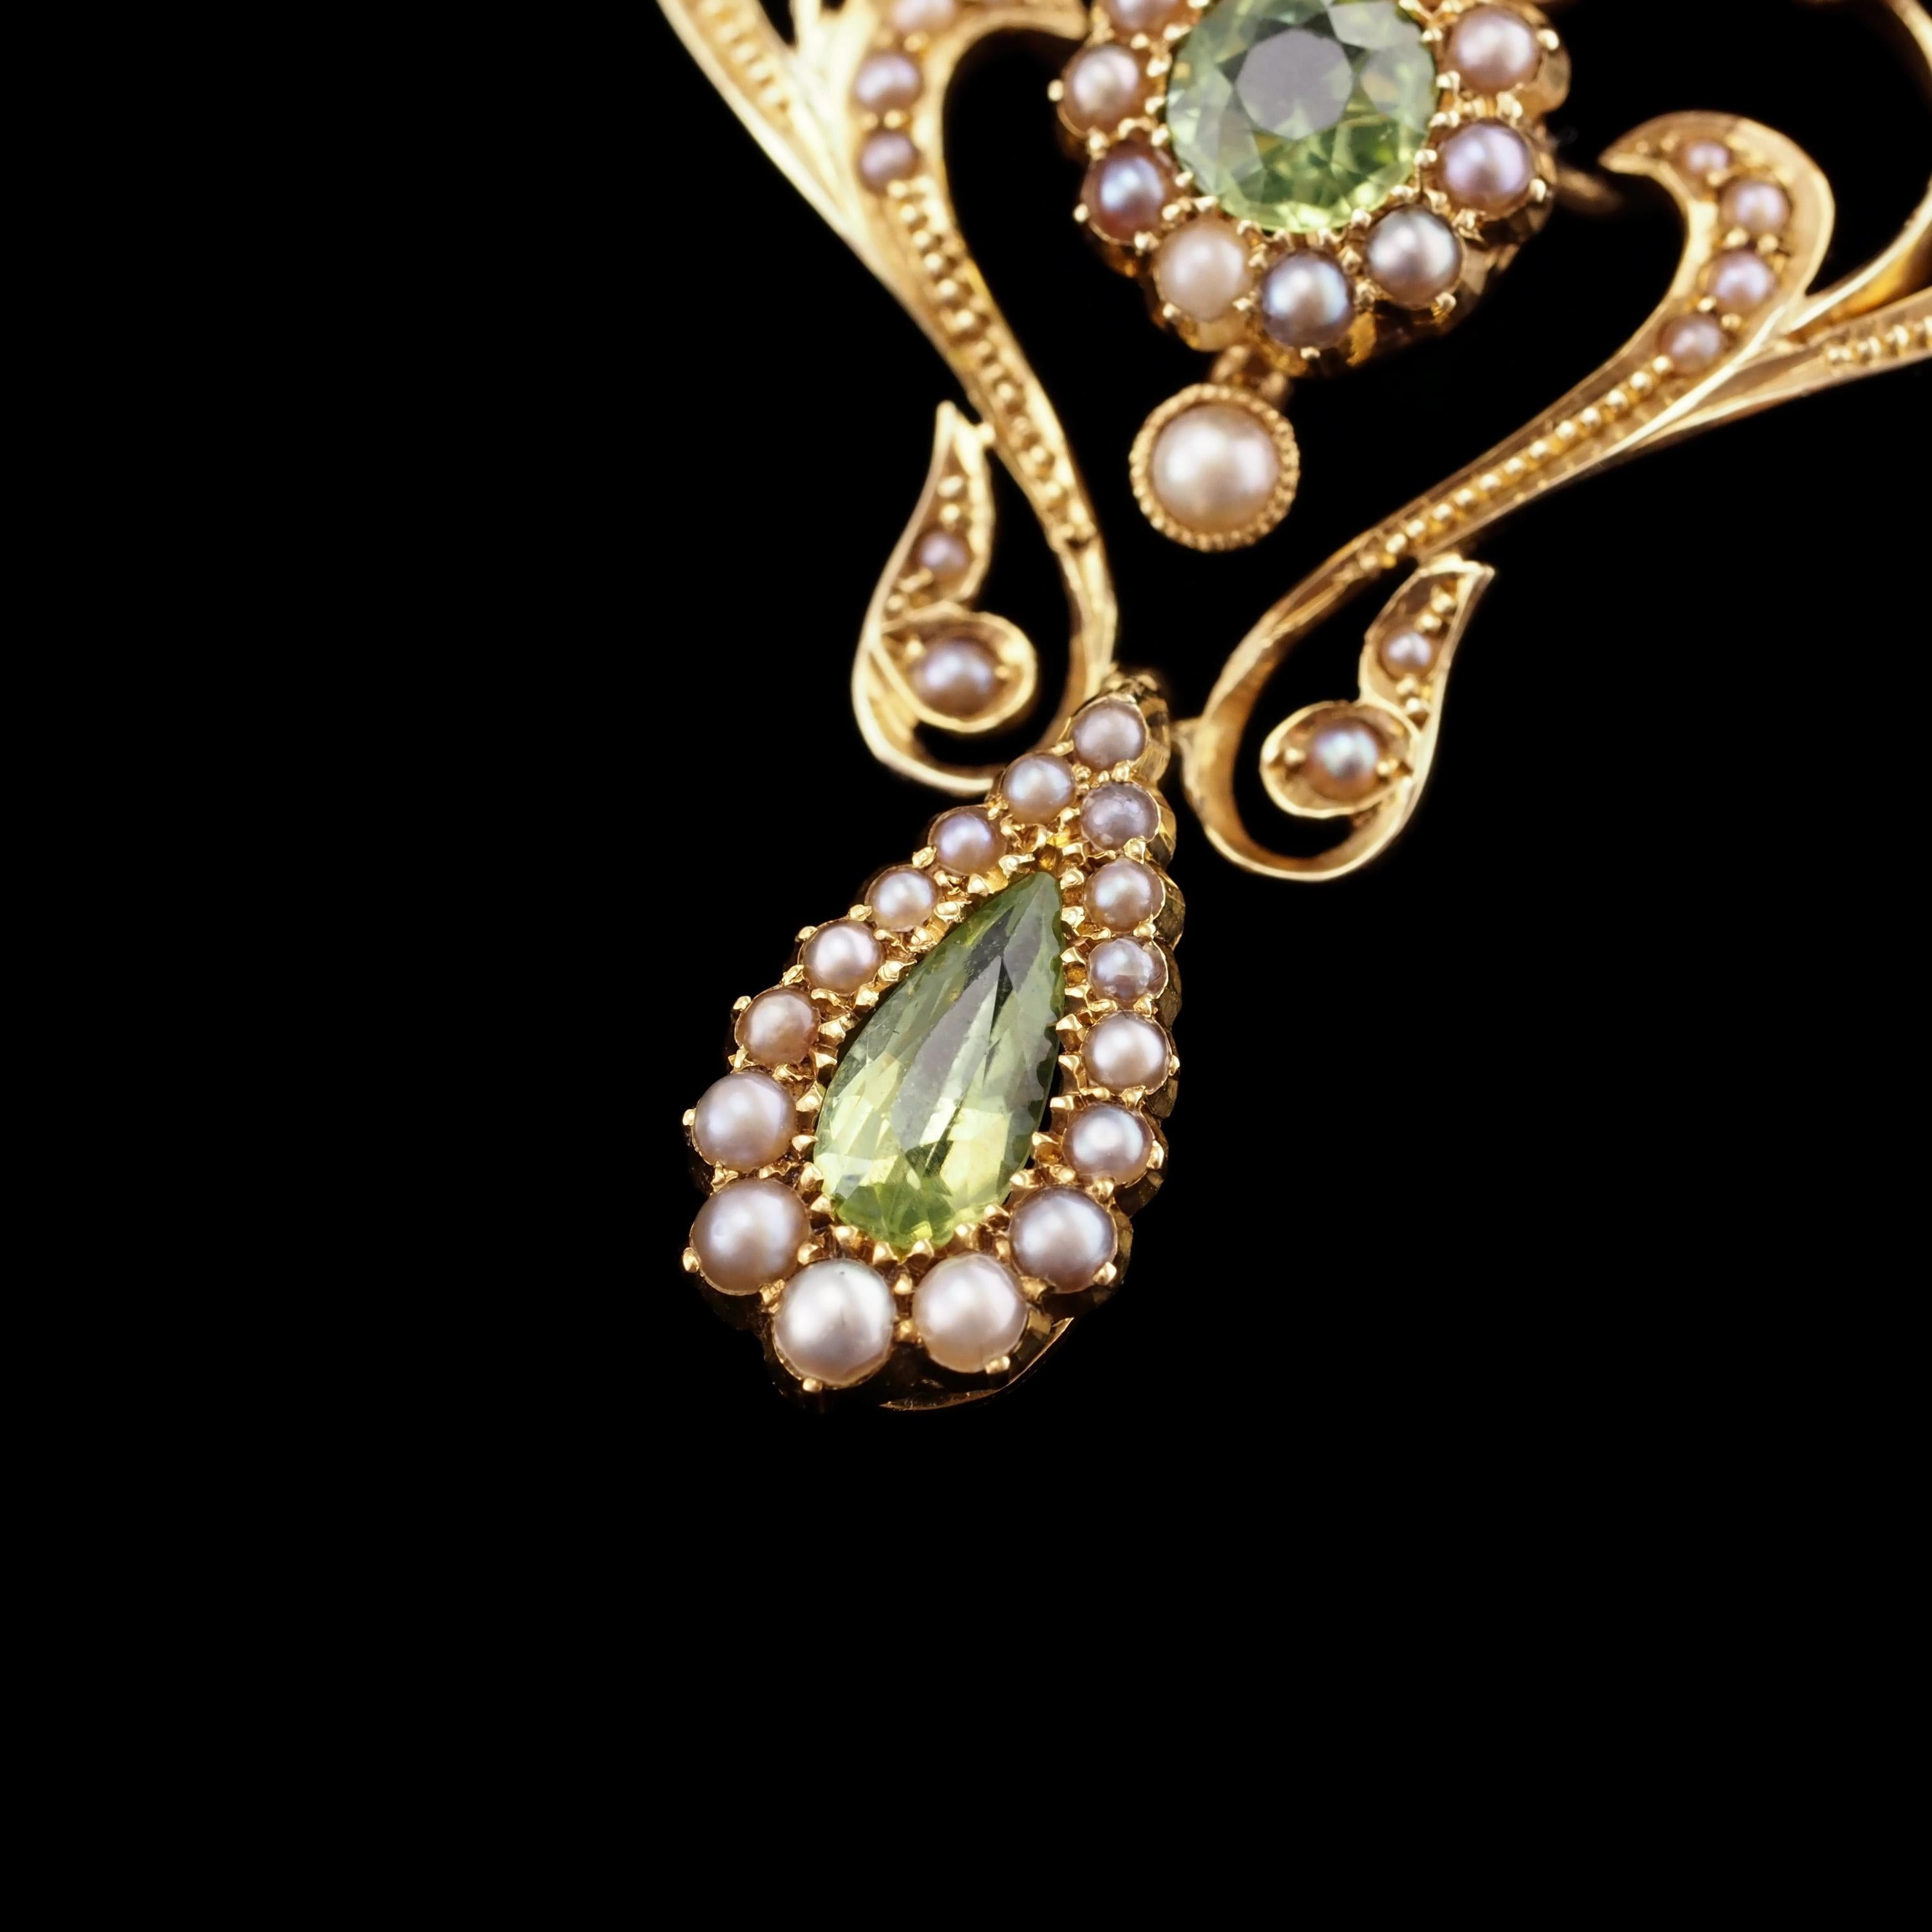 Antique 15K Gold Peridot & Pearl Lavalier Necklace - Art Nouveau c.1900s 6